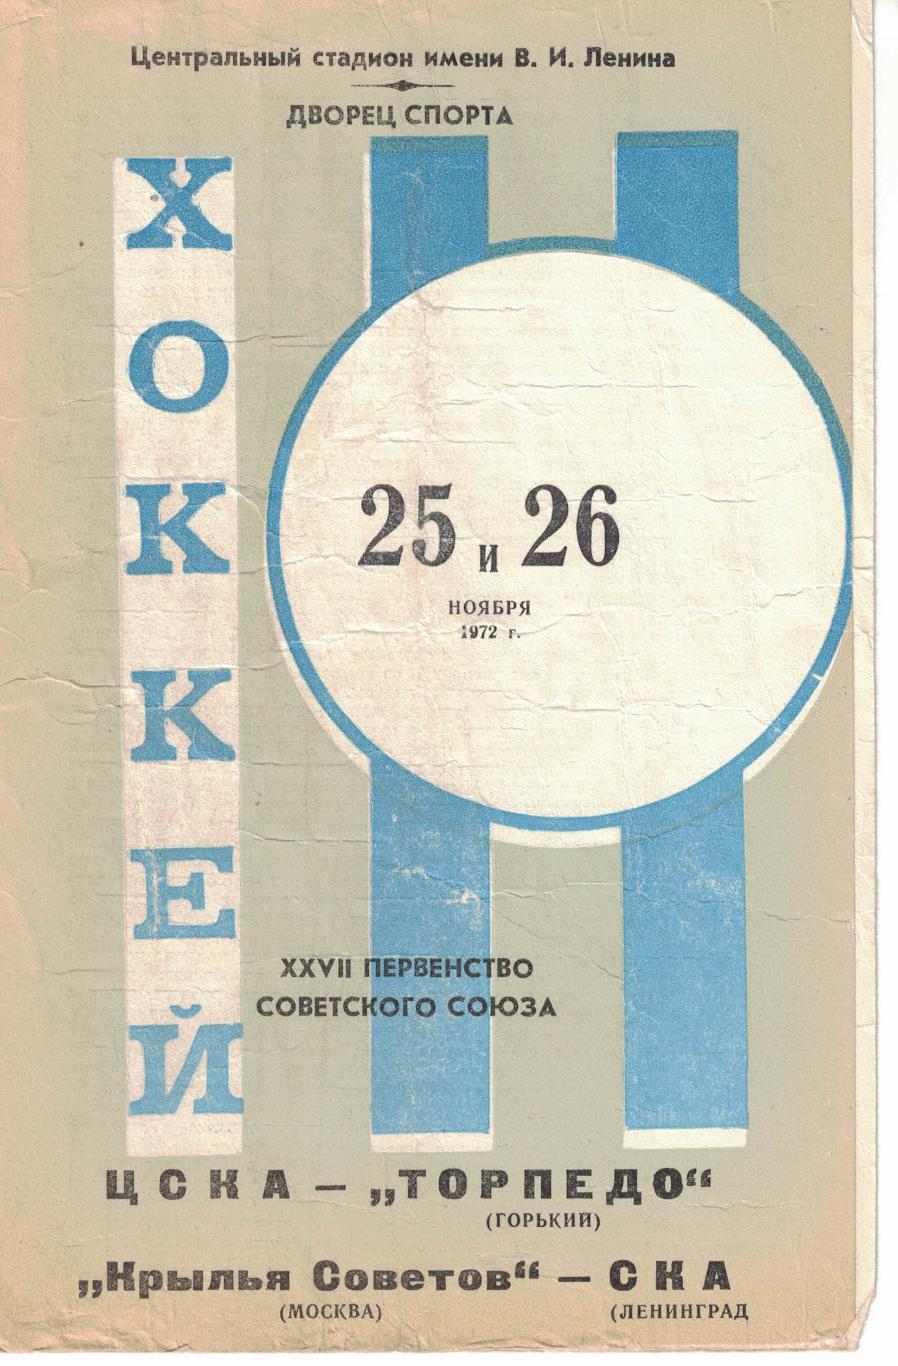 ЦСКА - Торпедо Горький, Крылья Советов Москва - СКА Ленинград 25 и 26.11.1972